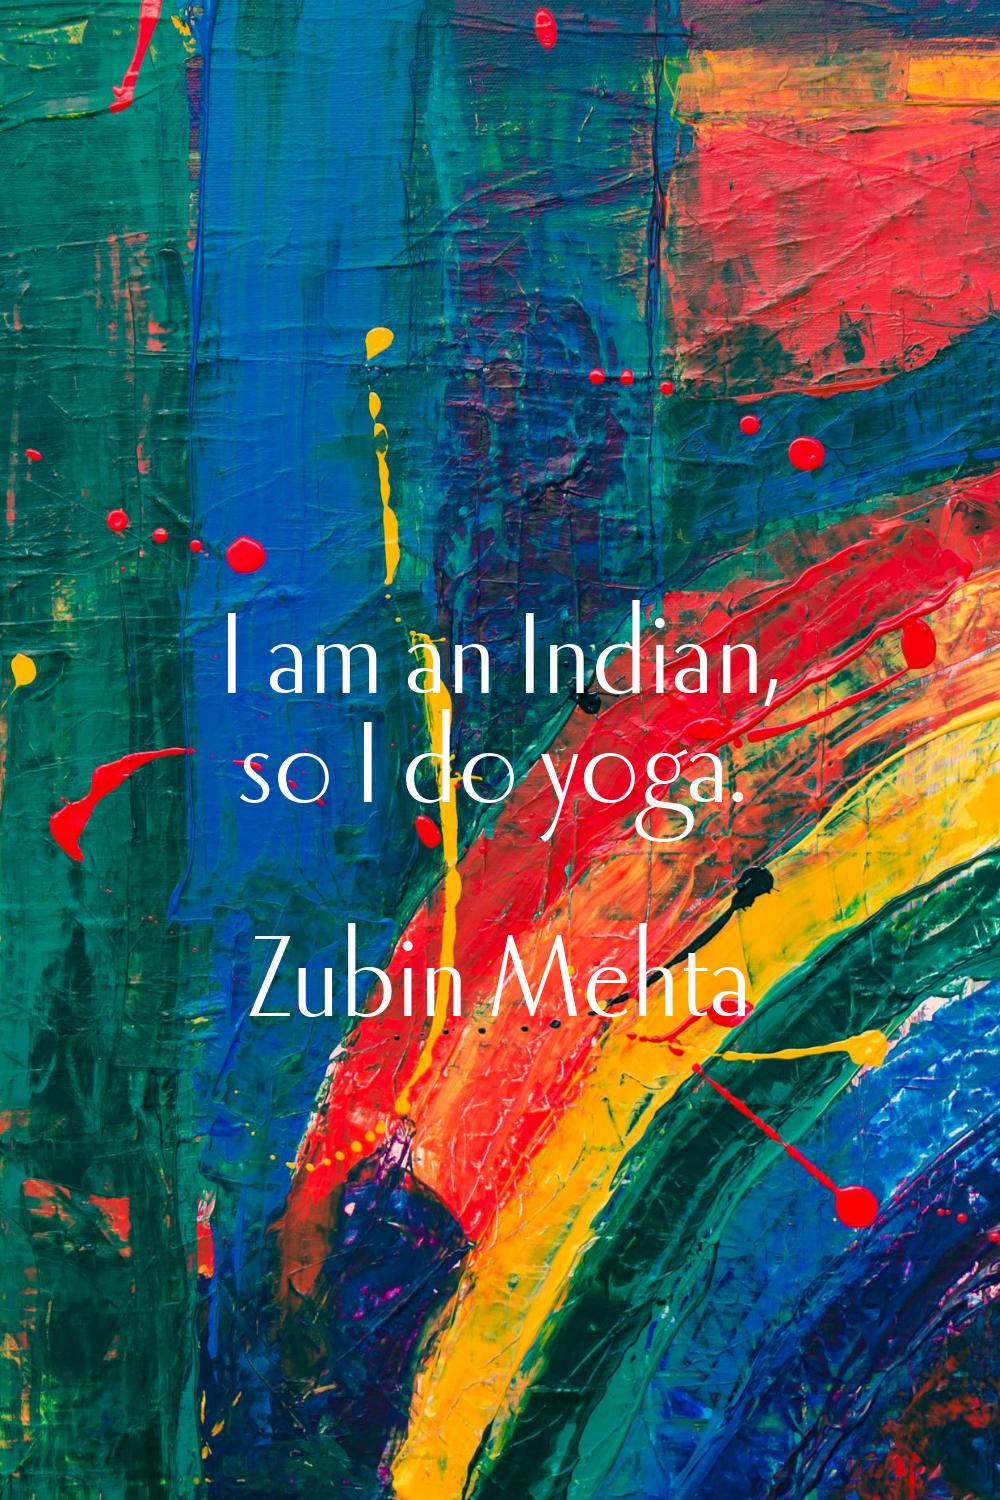 I am an Indian, so I do yoga.